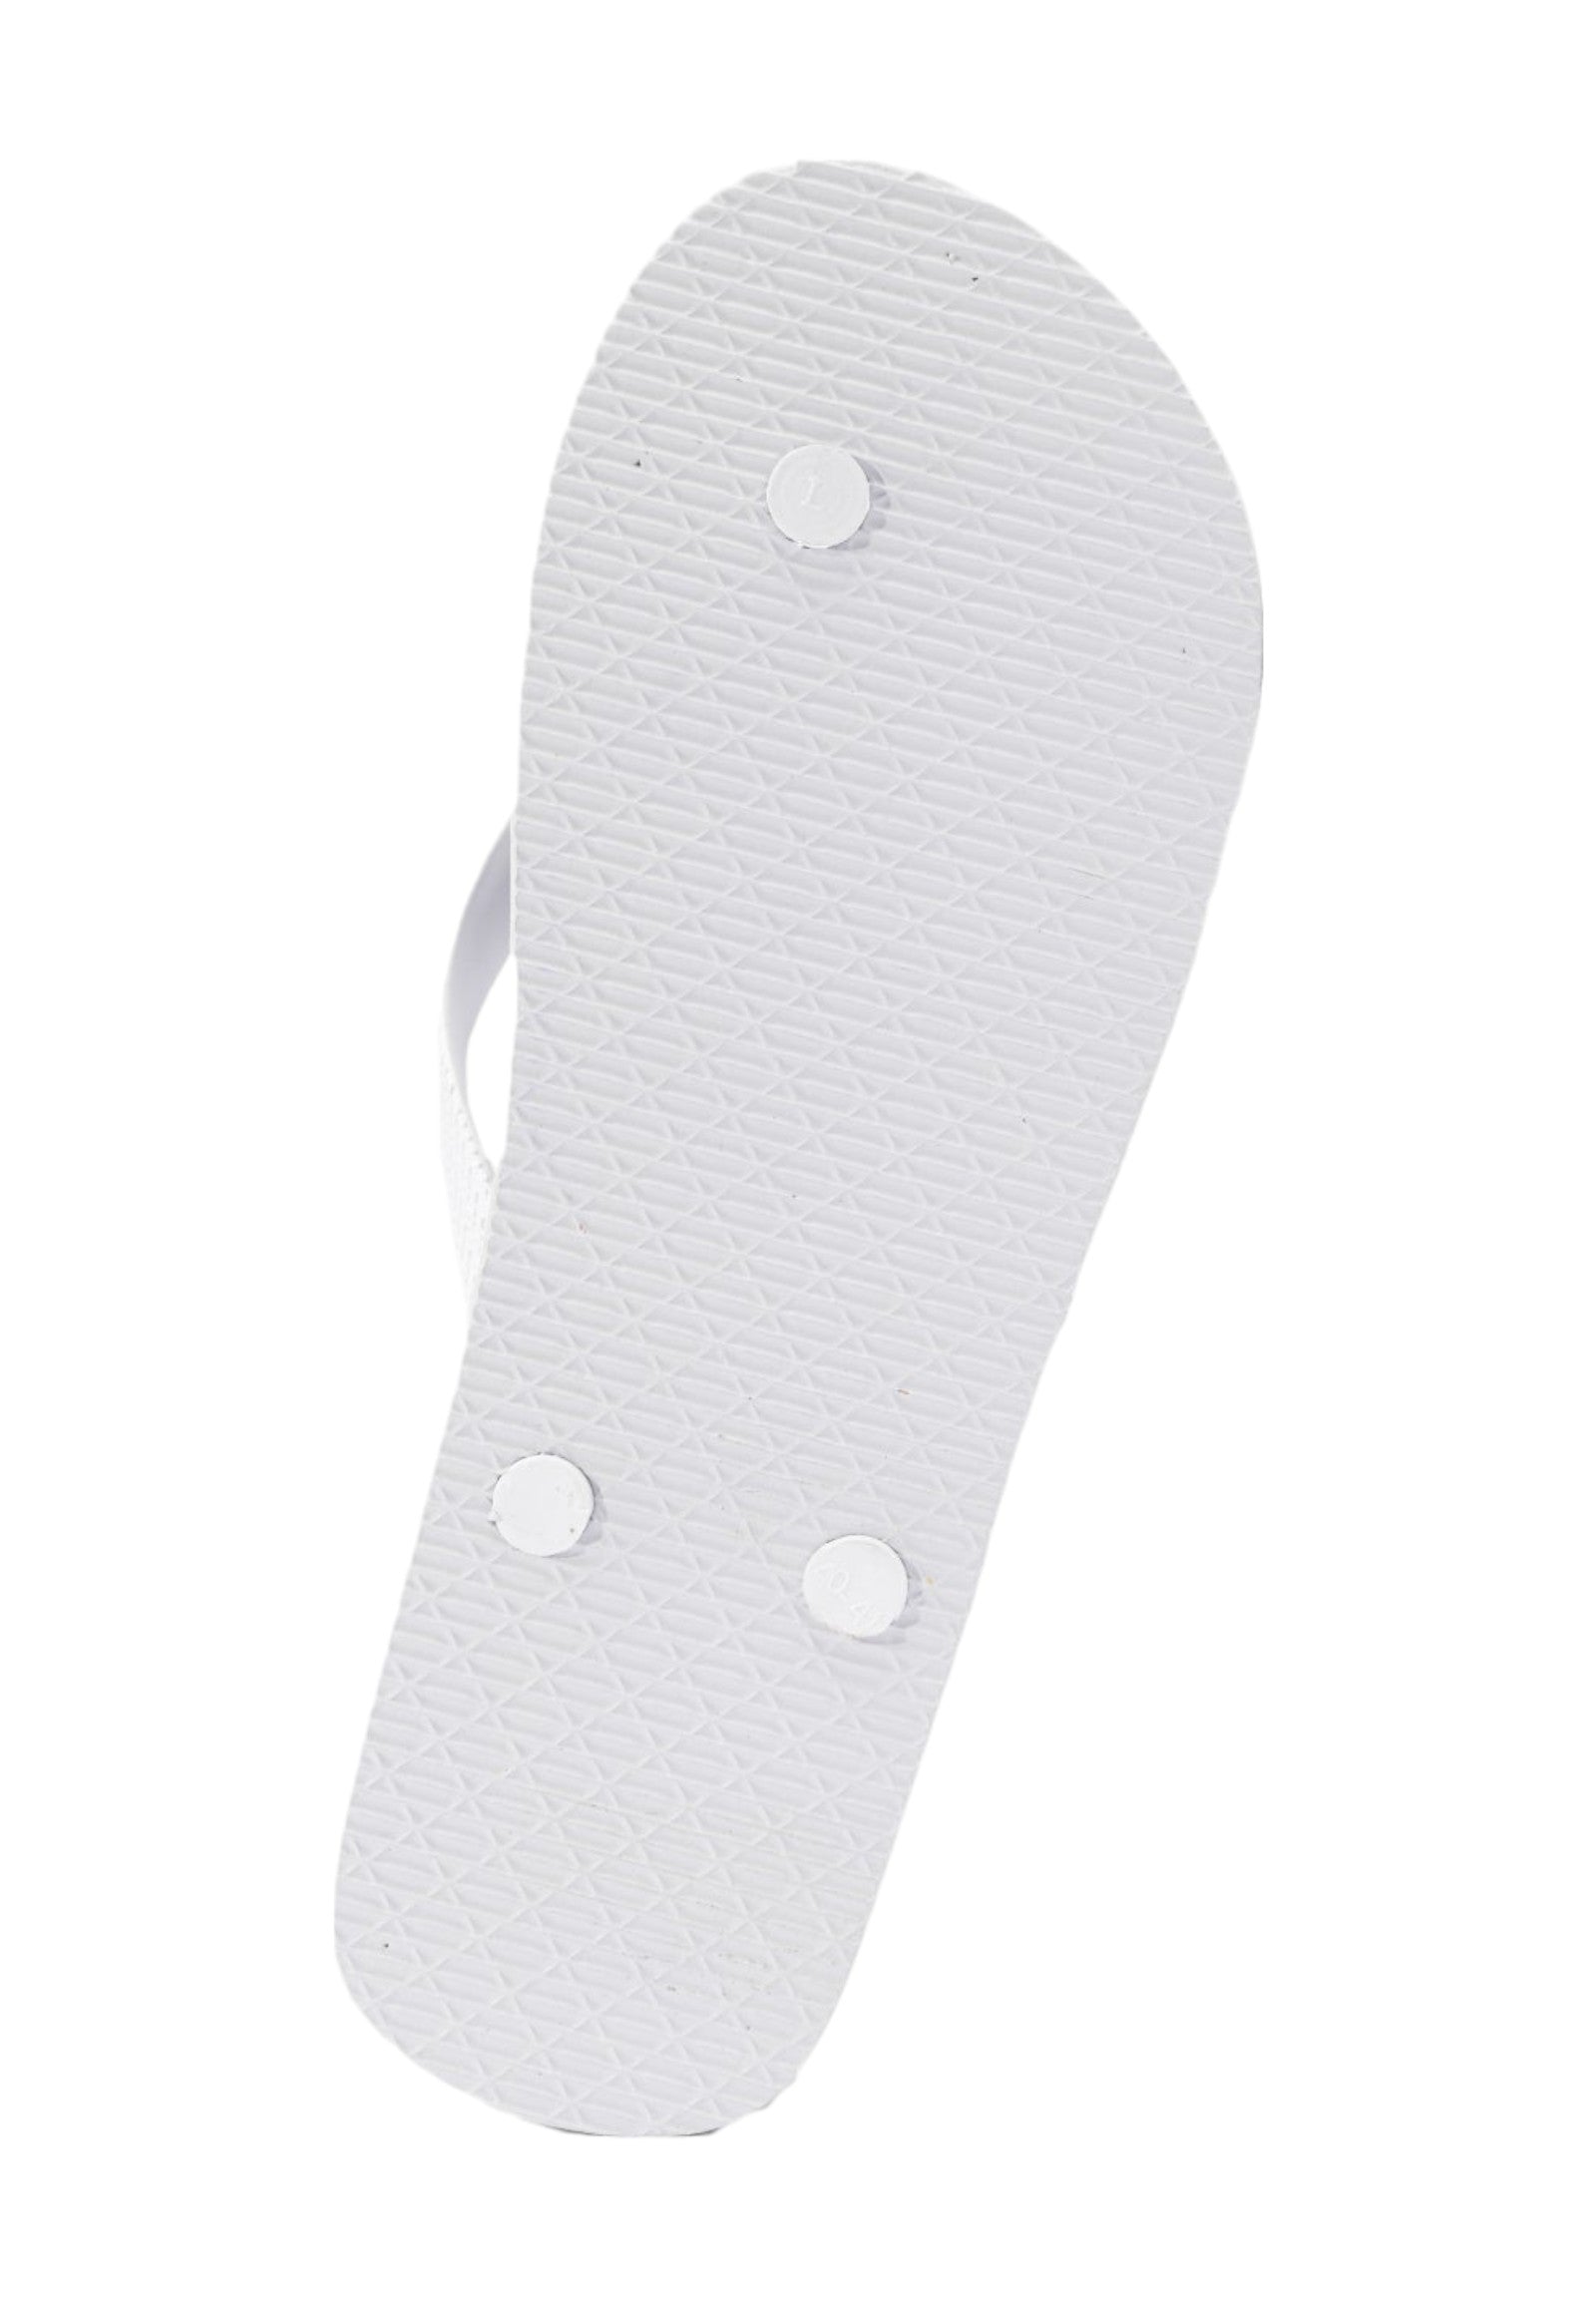 Flip flops Ffm0029 White